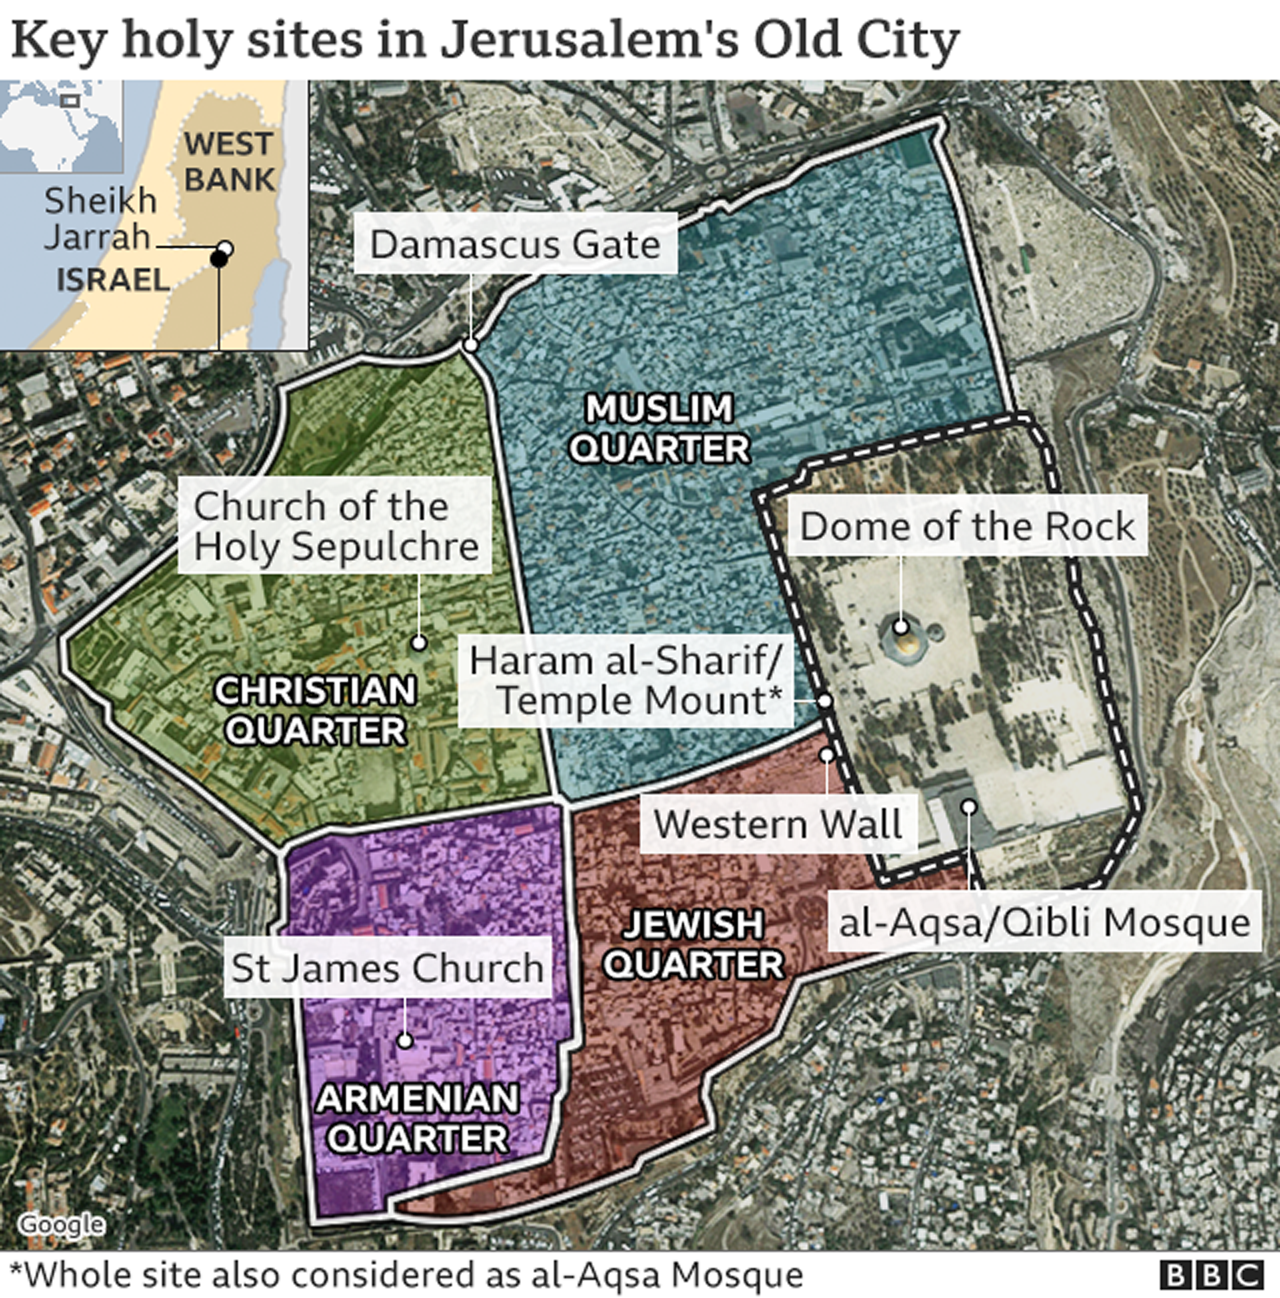 Key holy sites in Jerusalem's Old City